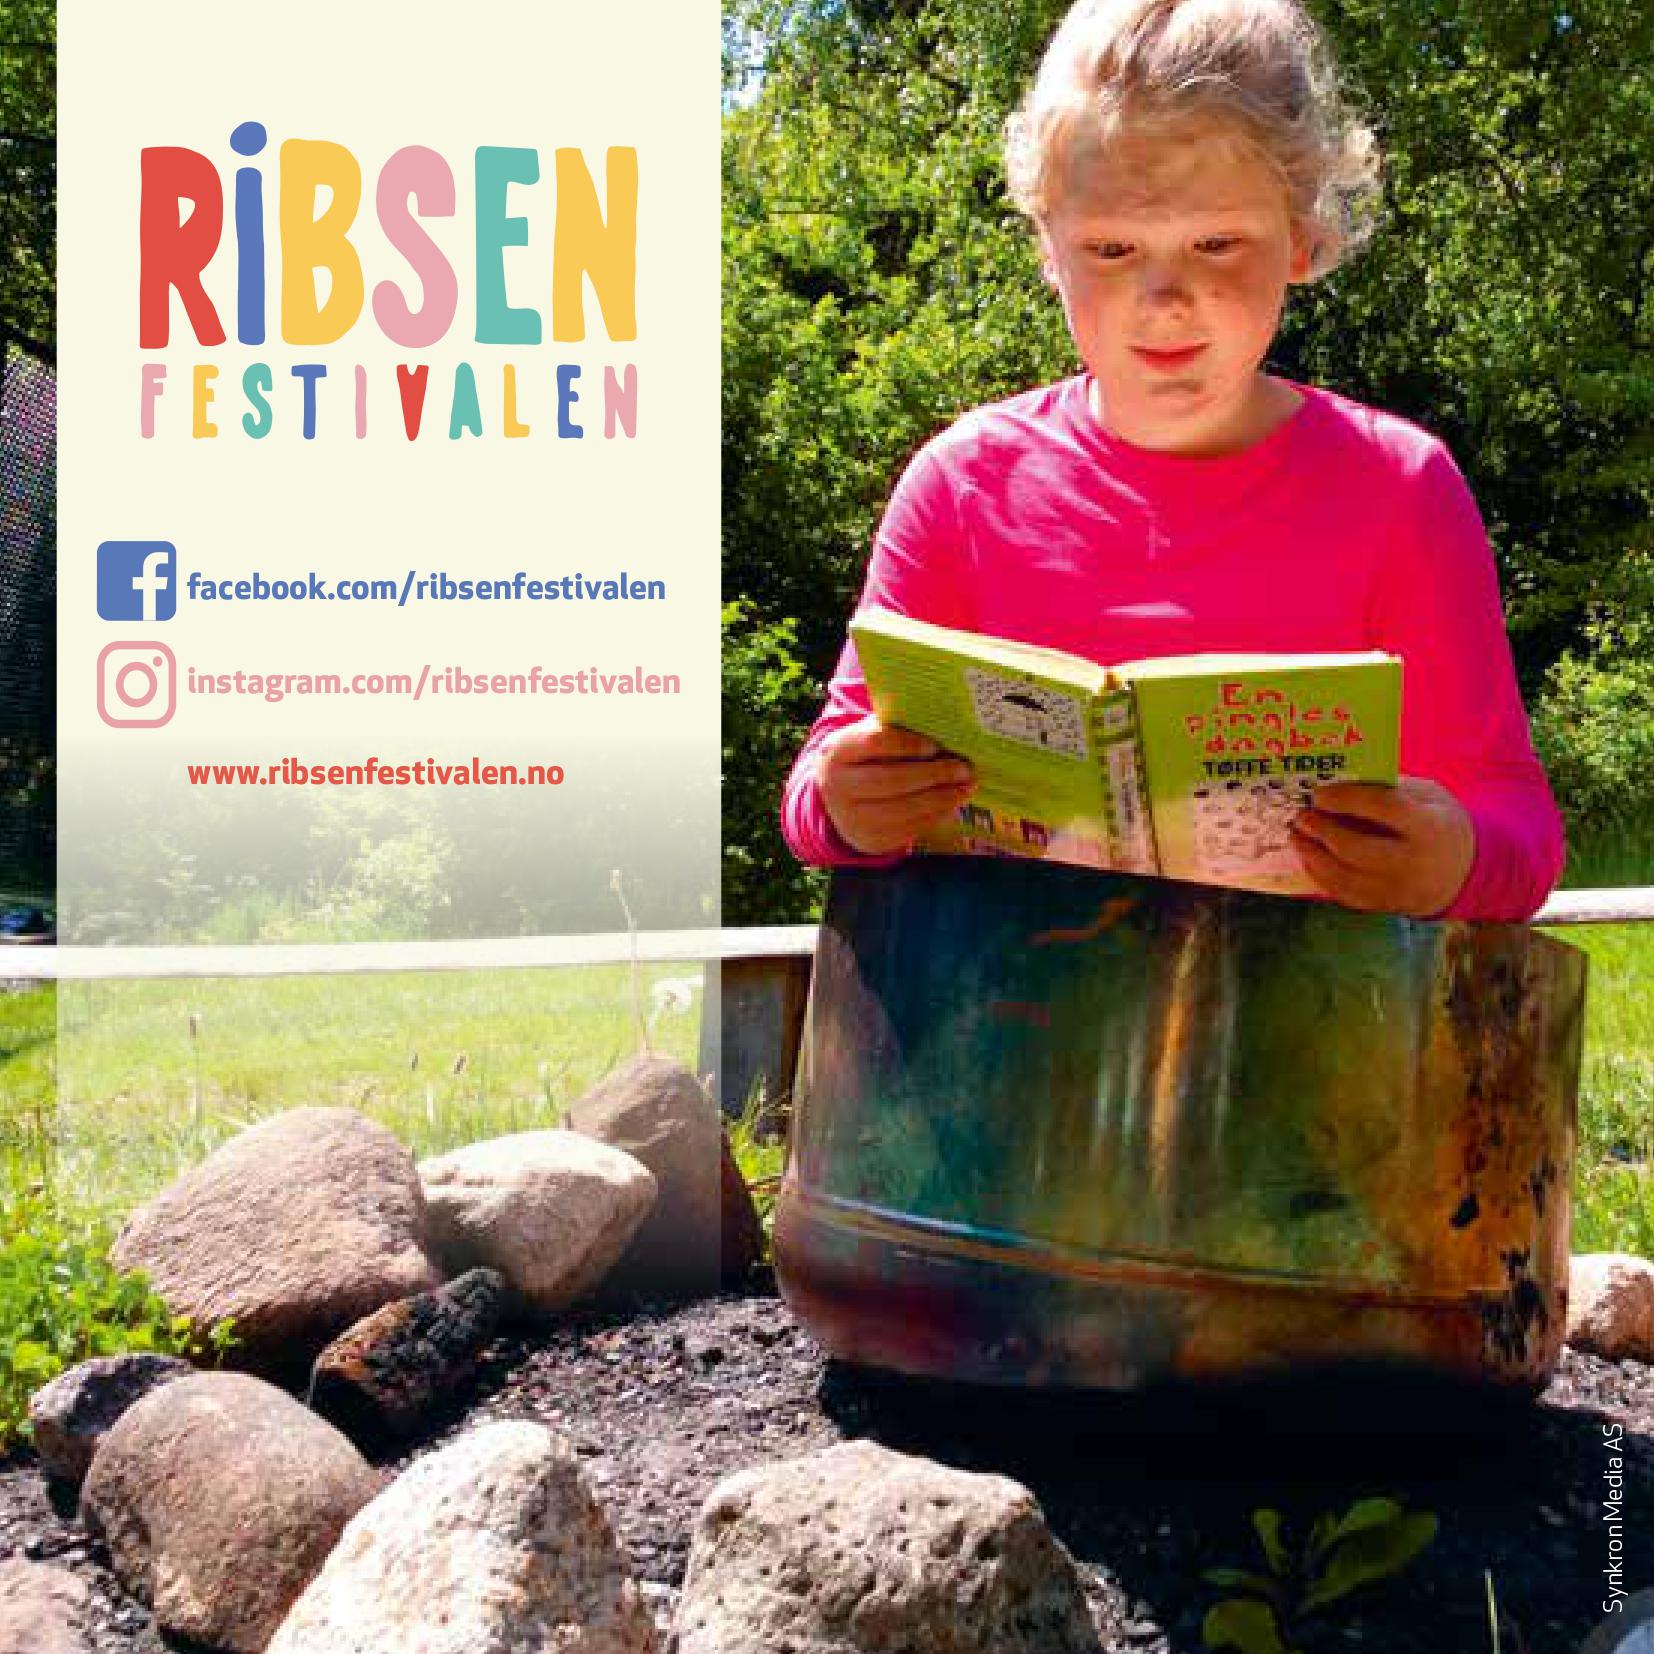 Ribsenfestivalen facebook.com/ribsenfestivalen instagram.com/ribsenfestivalen www.ribsenfestivalen.no